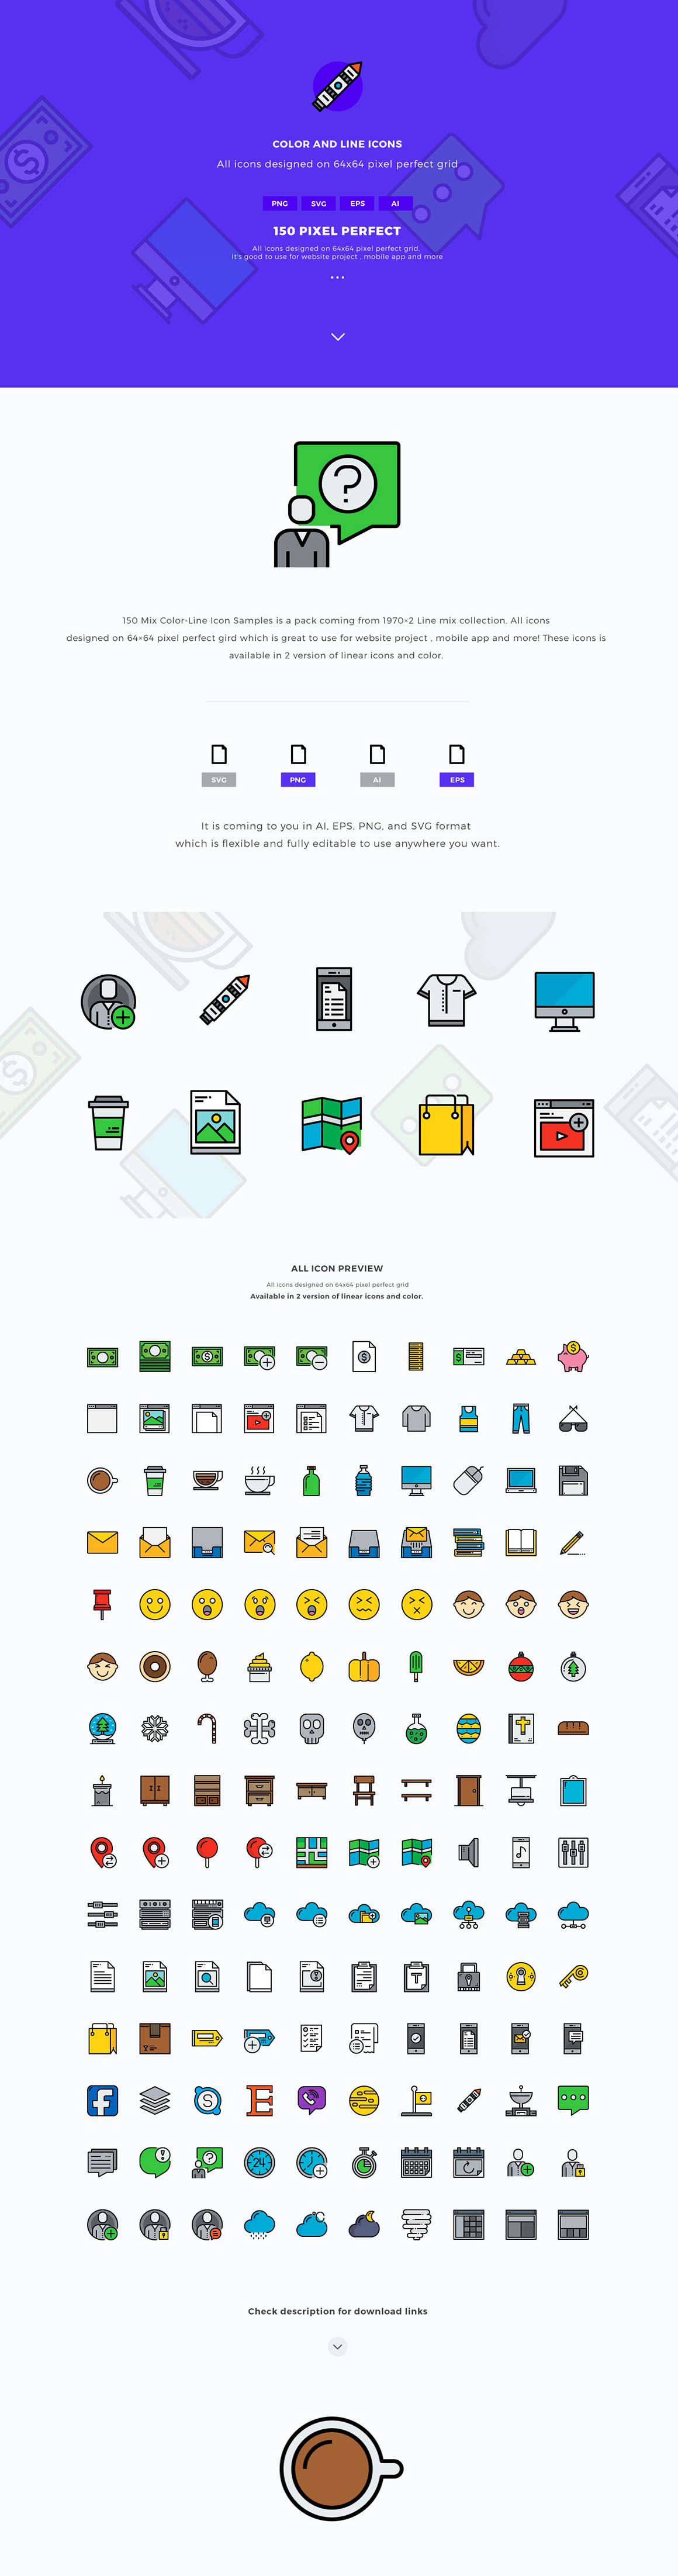 150个卡通花式图标 150 Free Fancy Icons [AI, EPS, PNG, SVG]插图(1)